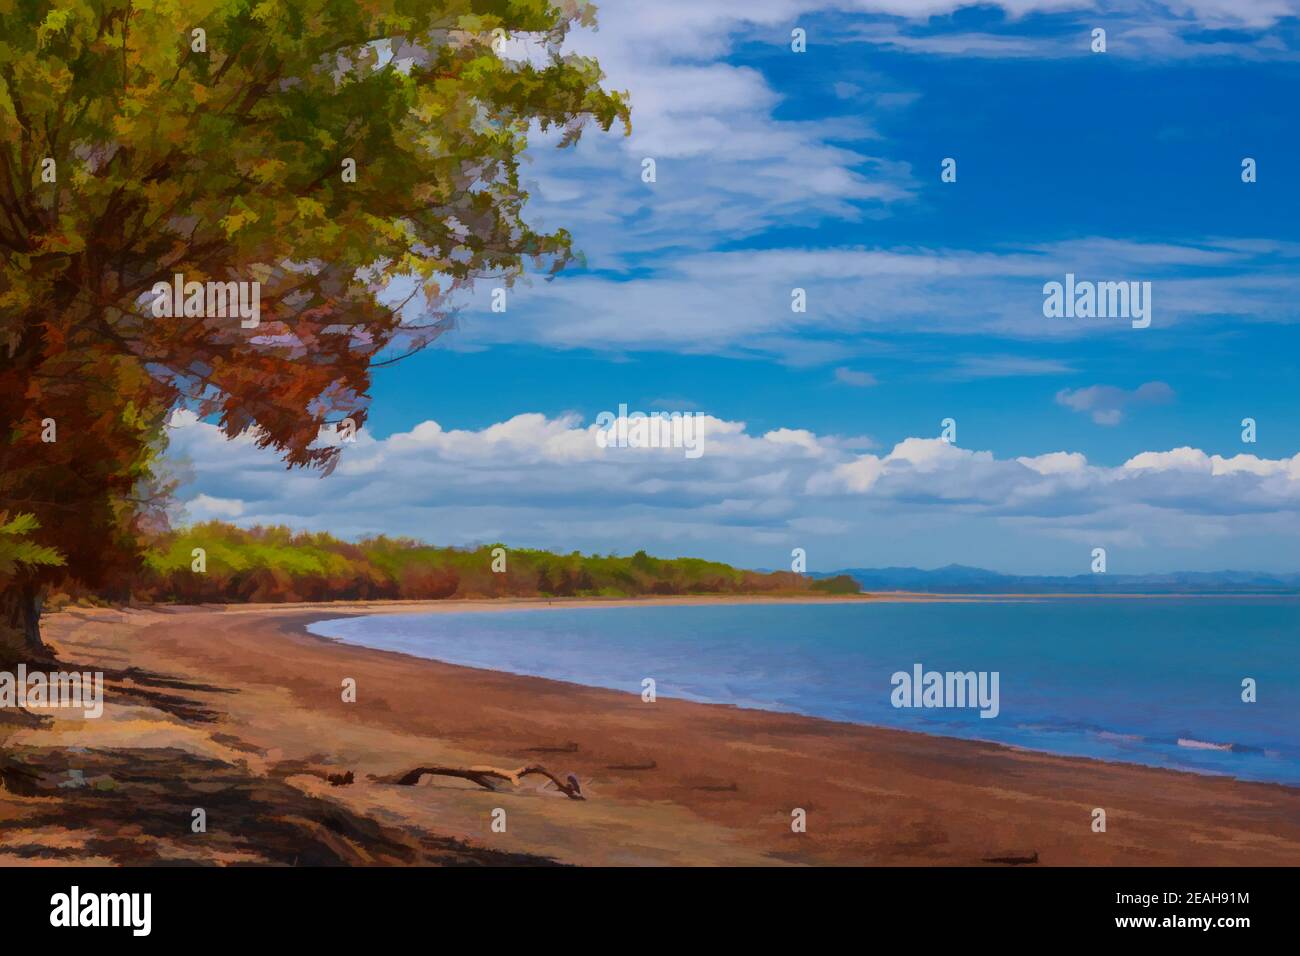 Peinture numérique d'une plage déserte de Lomolomo, sous un ciel bleu avec des nuages, Fidji. Banque D'Images